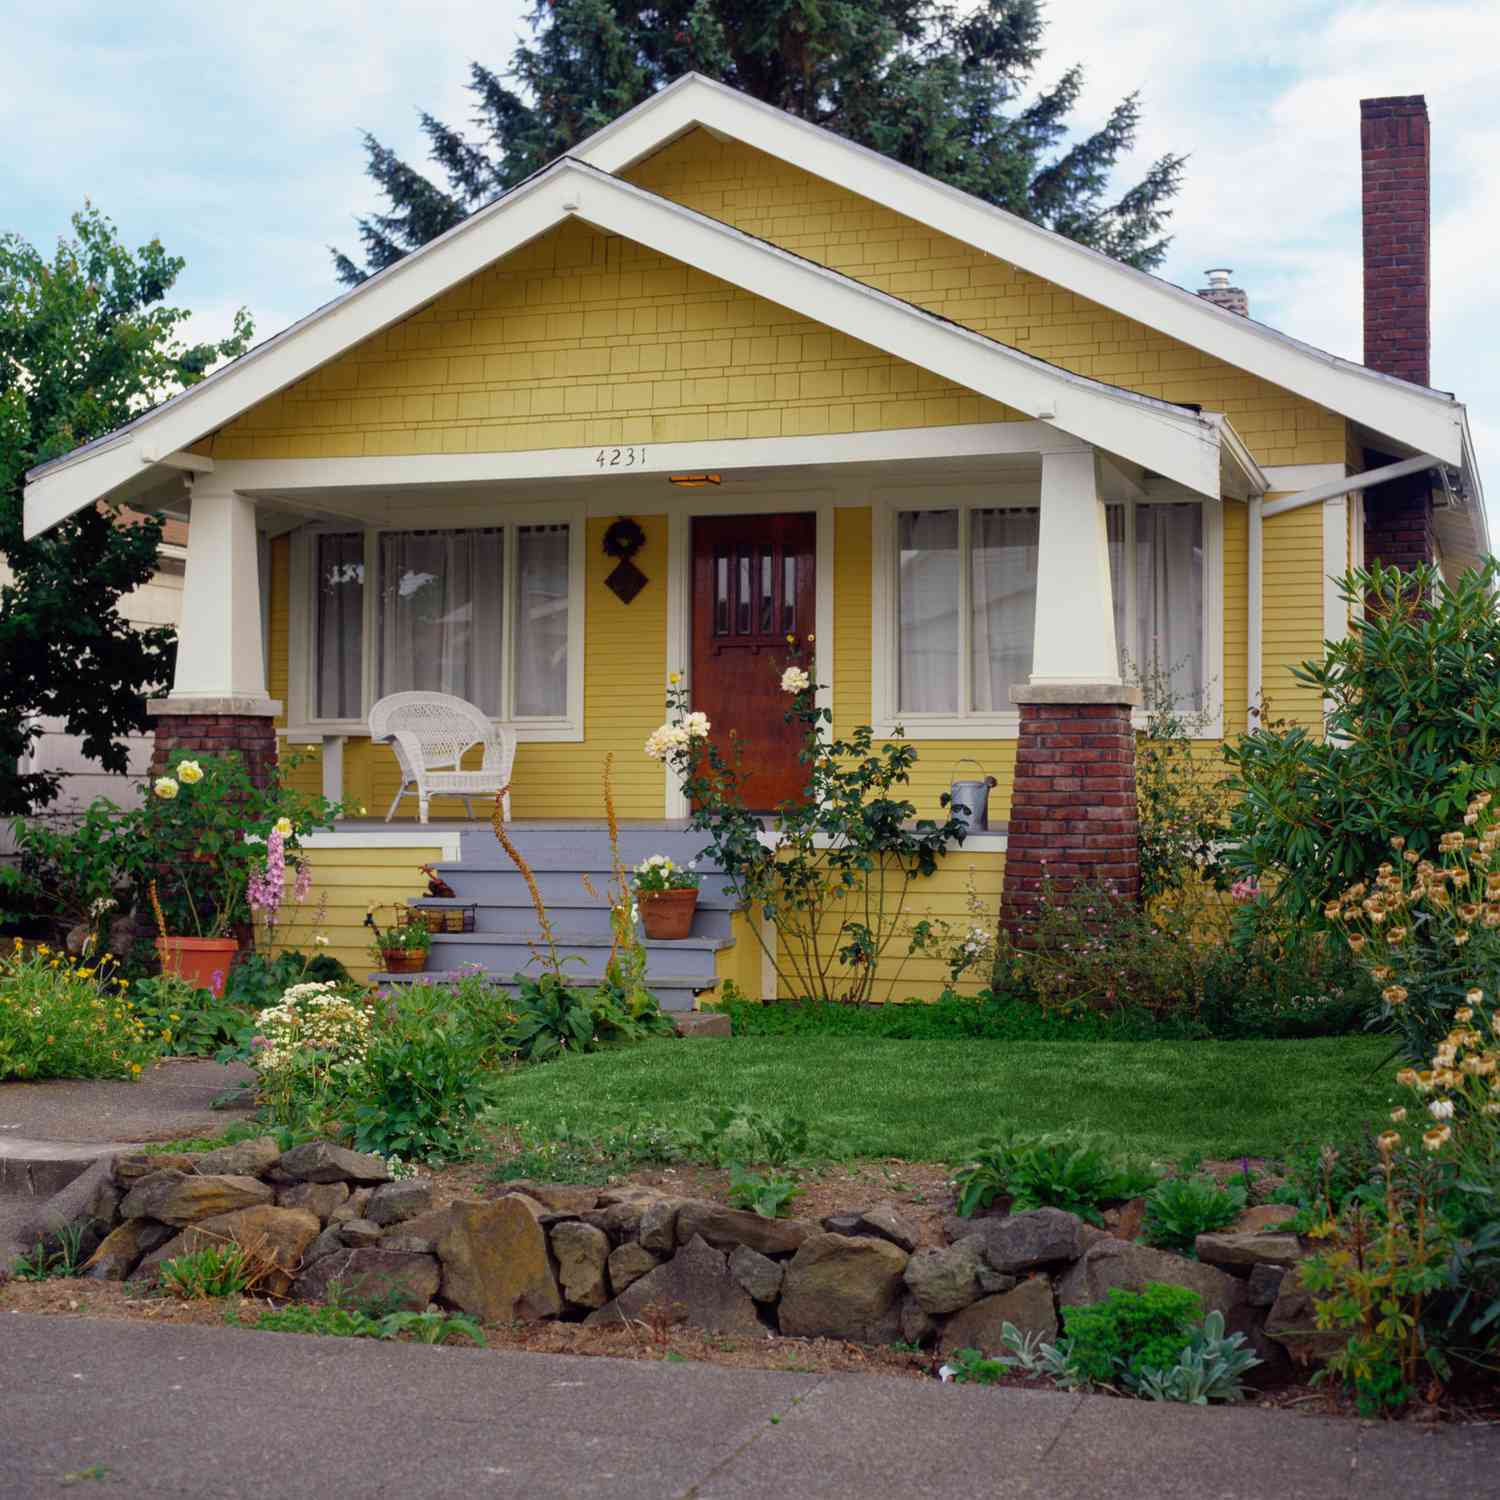 Maison de style bungalow jaune avec jardin, vue extérieure